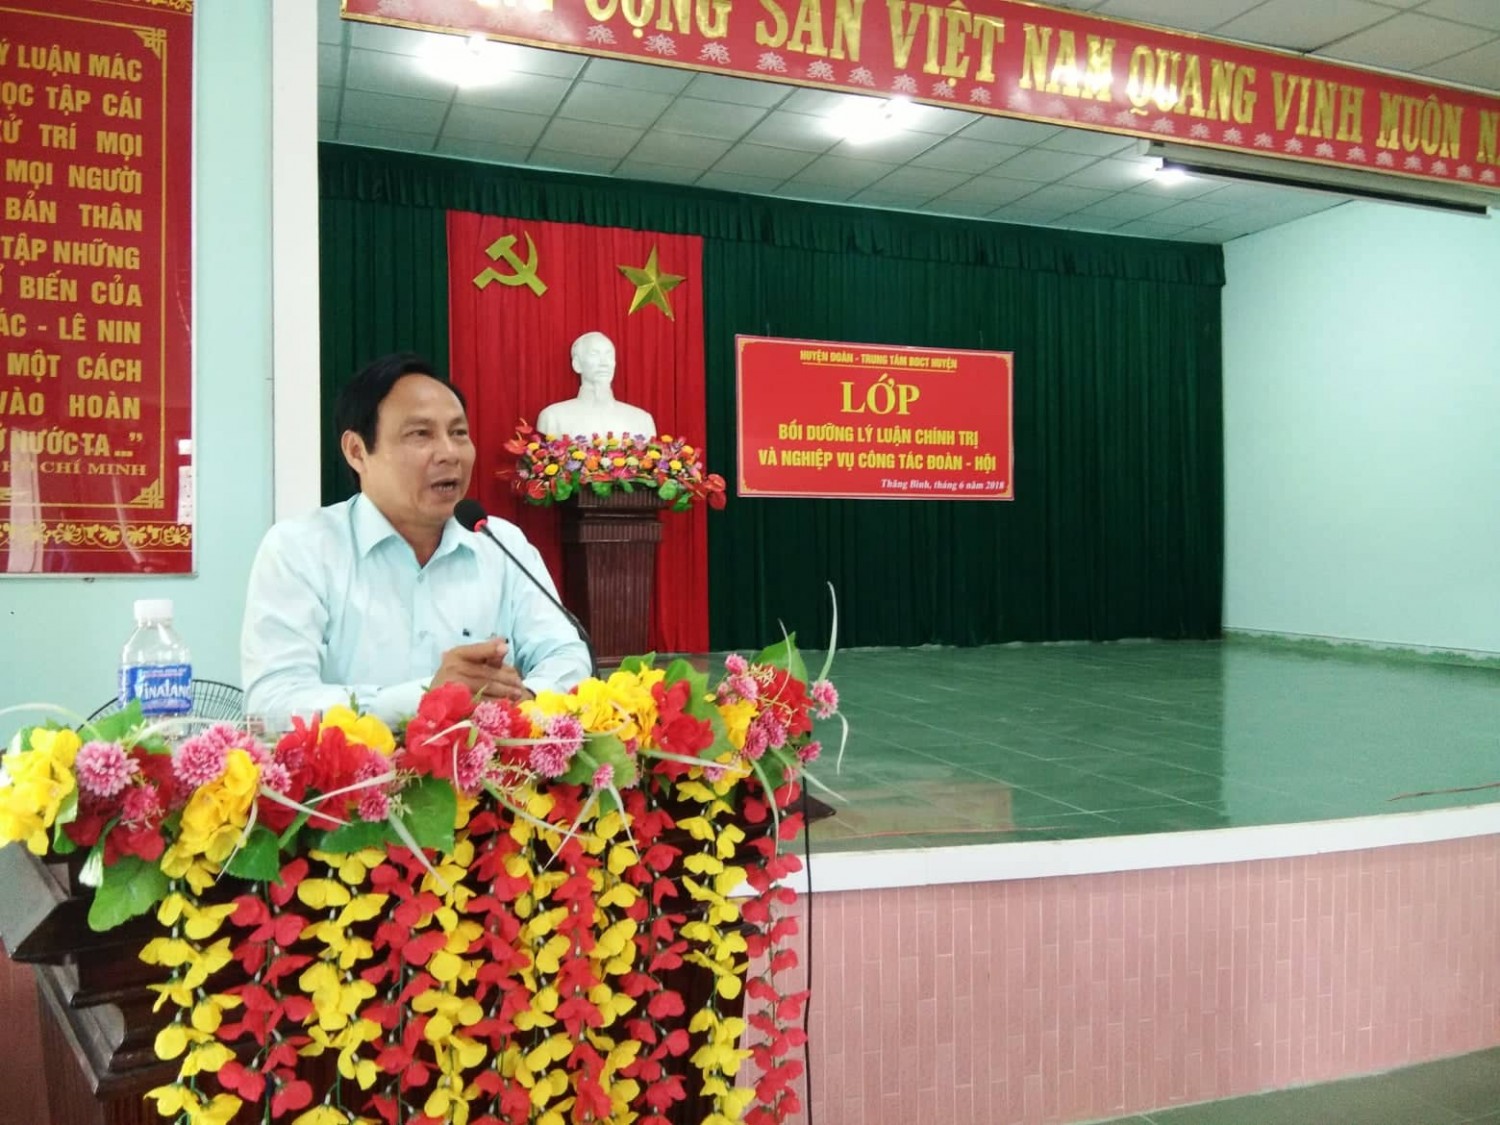 Một số giải pháp thực hiện quy định về chế độ học tập lý luận chính trị cho cán bộ Đoàn huyện Thăng Bình, giai đoạn 2018 – 2022